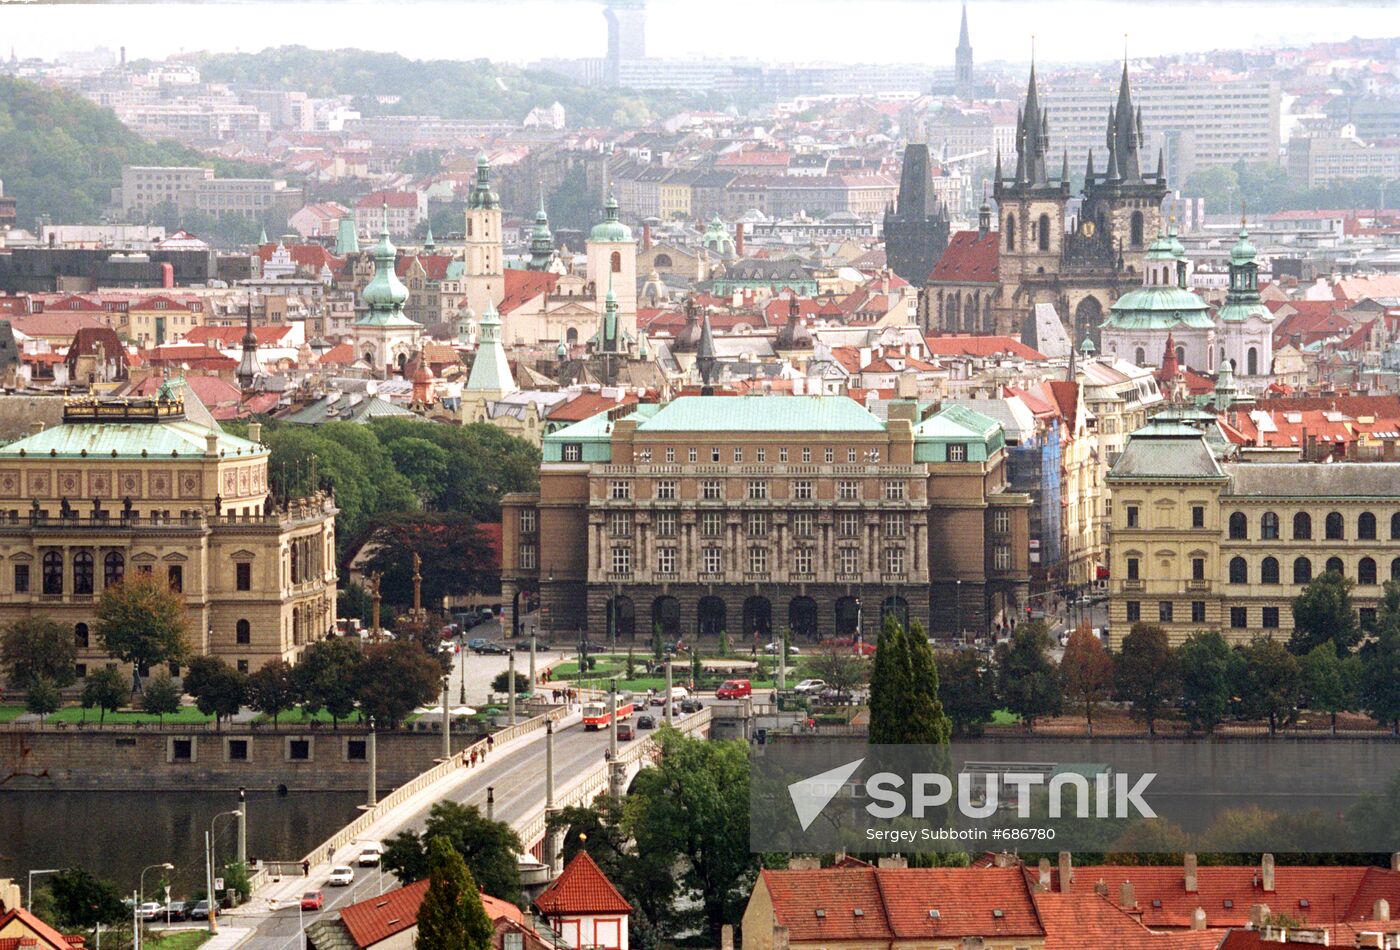 View of center of Prague